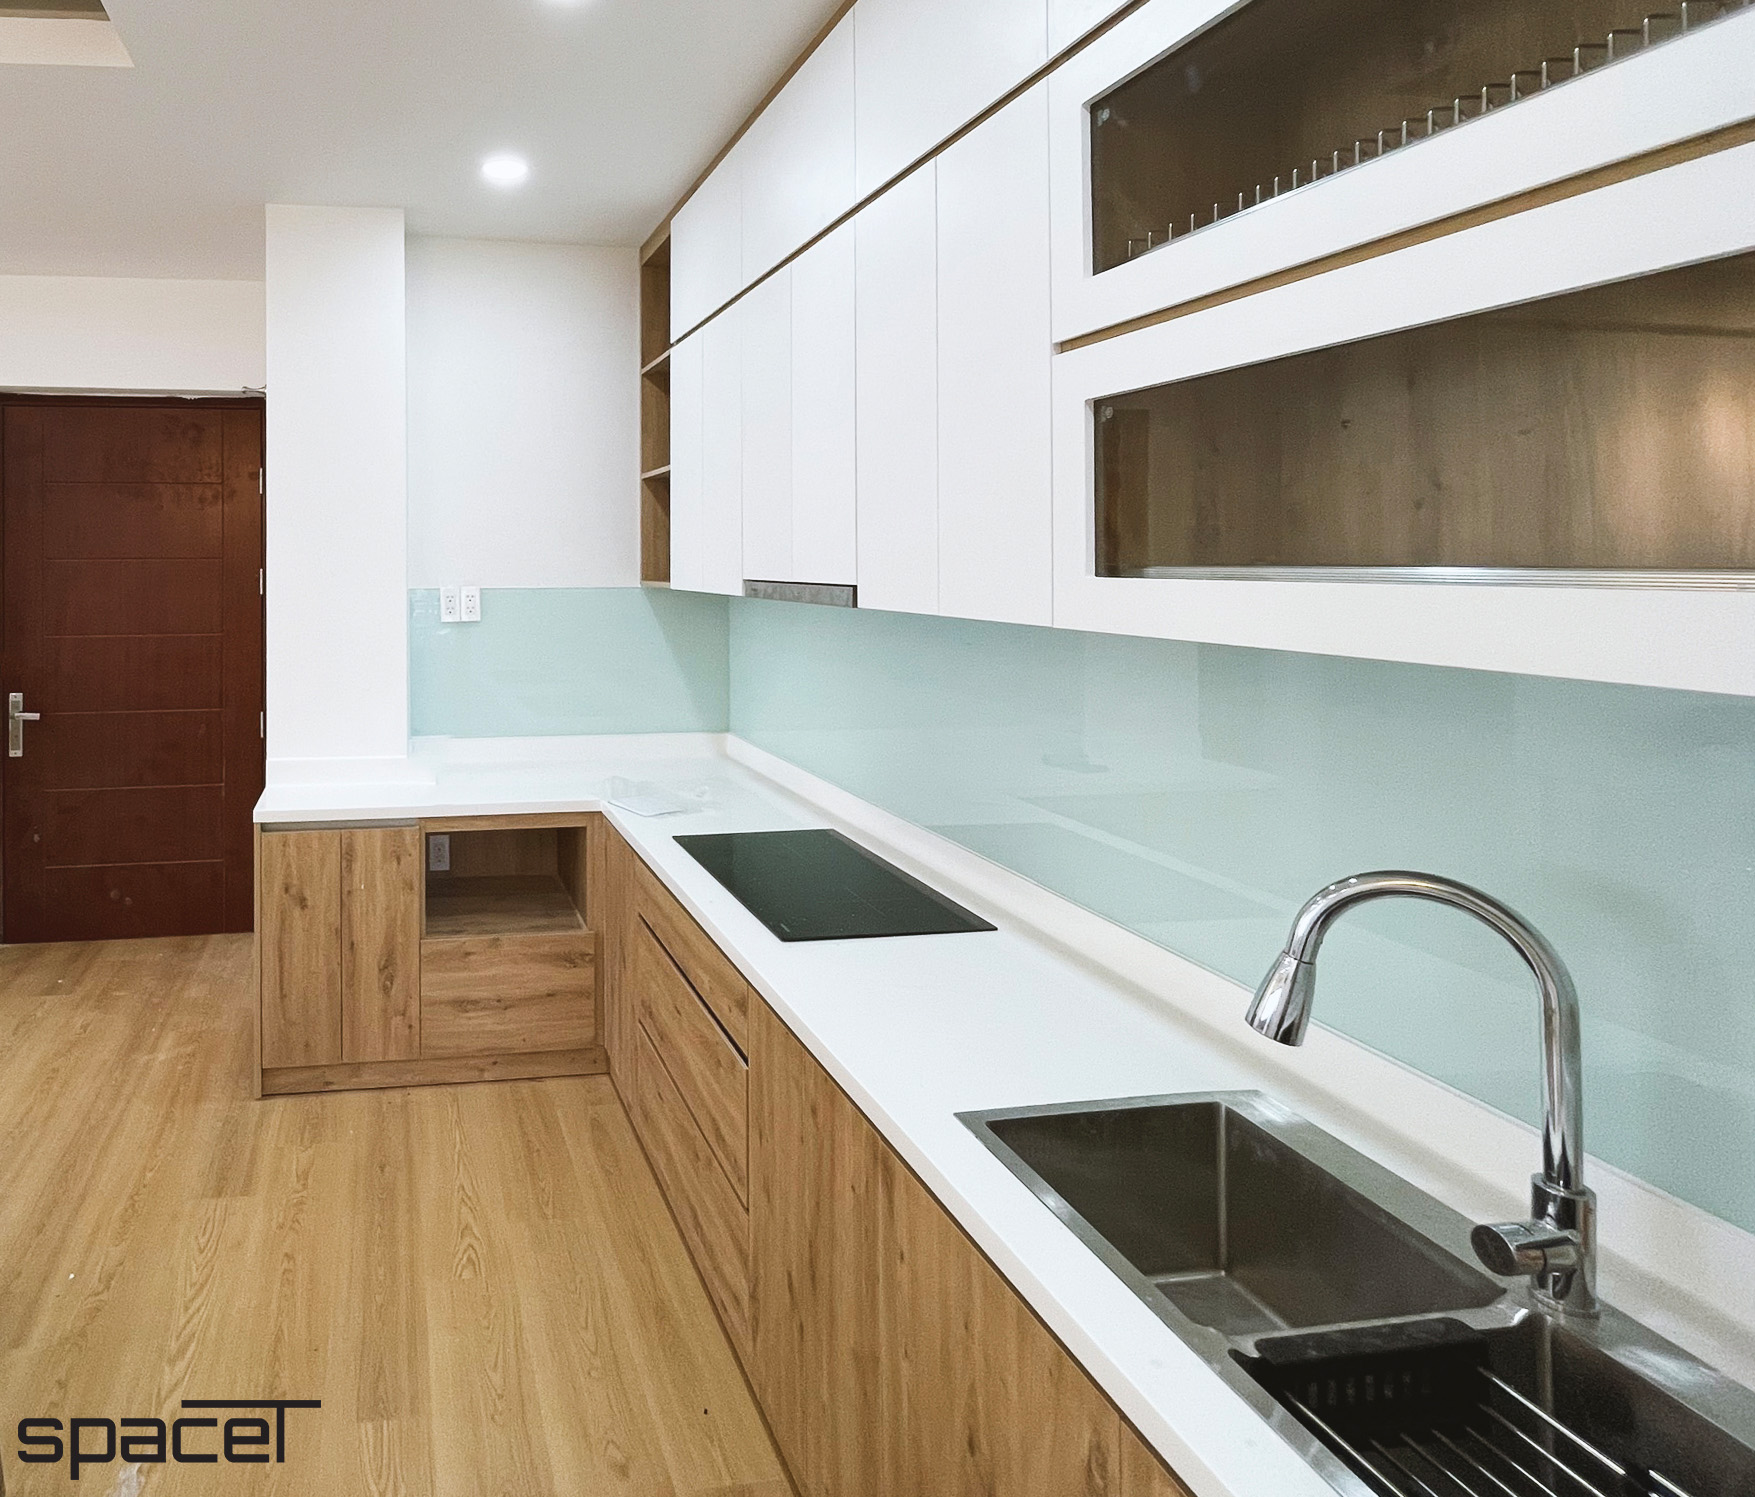 Phòng bếp, phong cách Hiện đại Modern, hoàn thiện nội thất, căn hộ chung cư Minh Thành